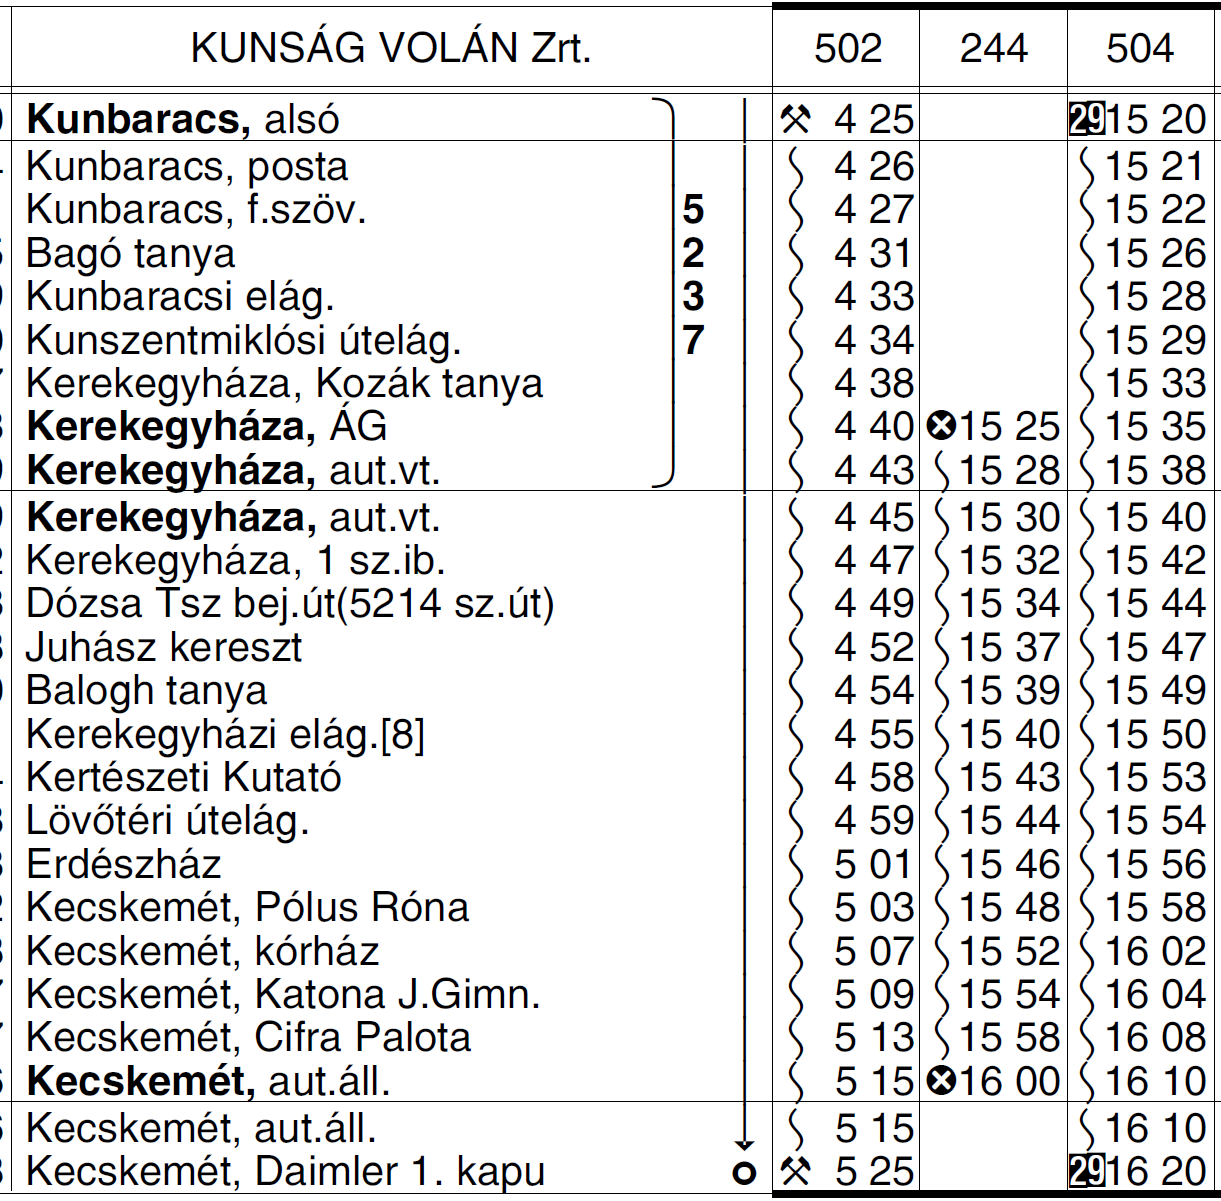 12 5235 KECSKEMÉT KEREKEGYHÁZA KUNBARACS KUNADACS autóbuszvonalon a 273 sz. (Kecskemétről 6.20 órakor indul Kerekegyházára) és a 244 sz. (Kerekegyházáról naponta 15.